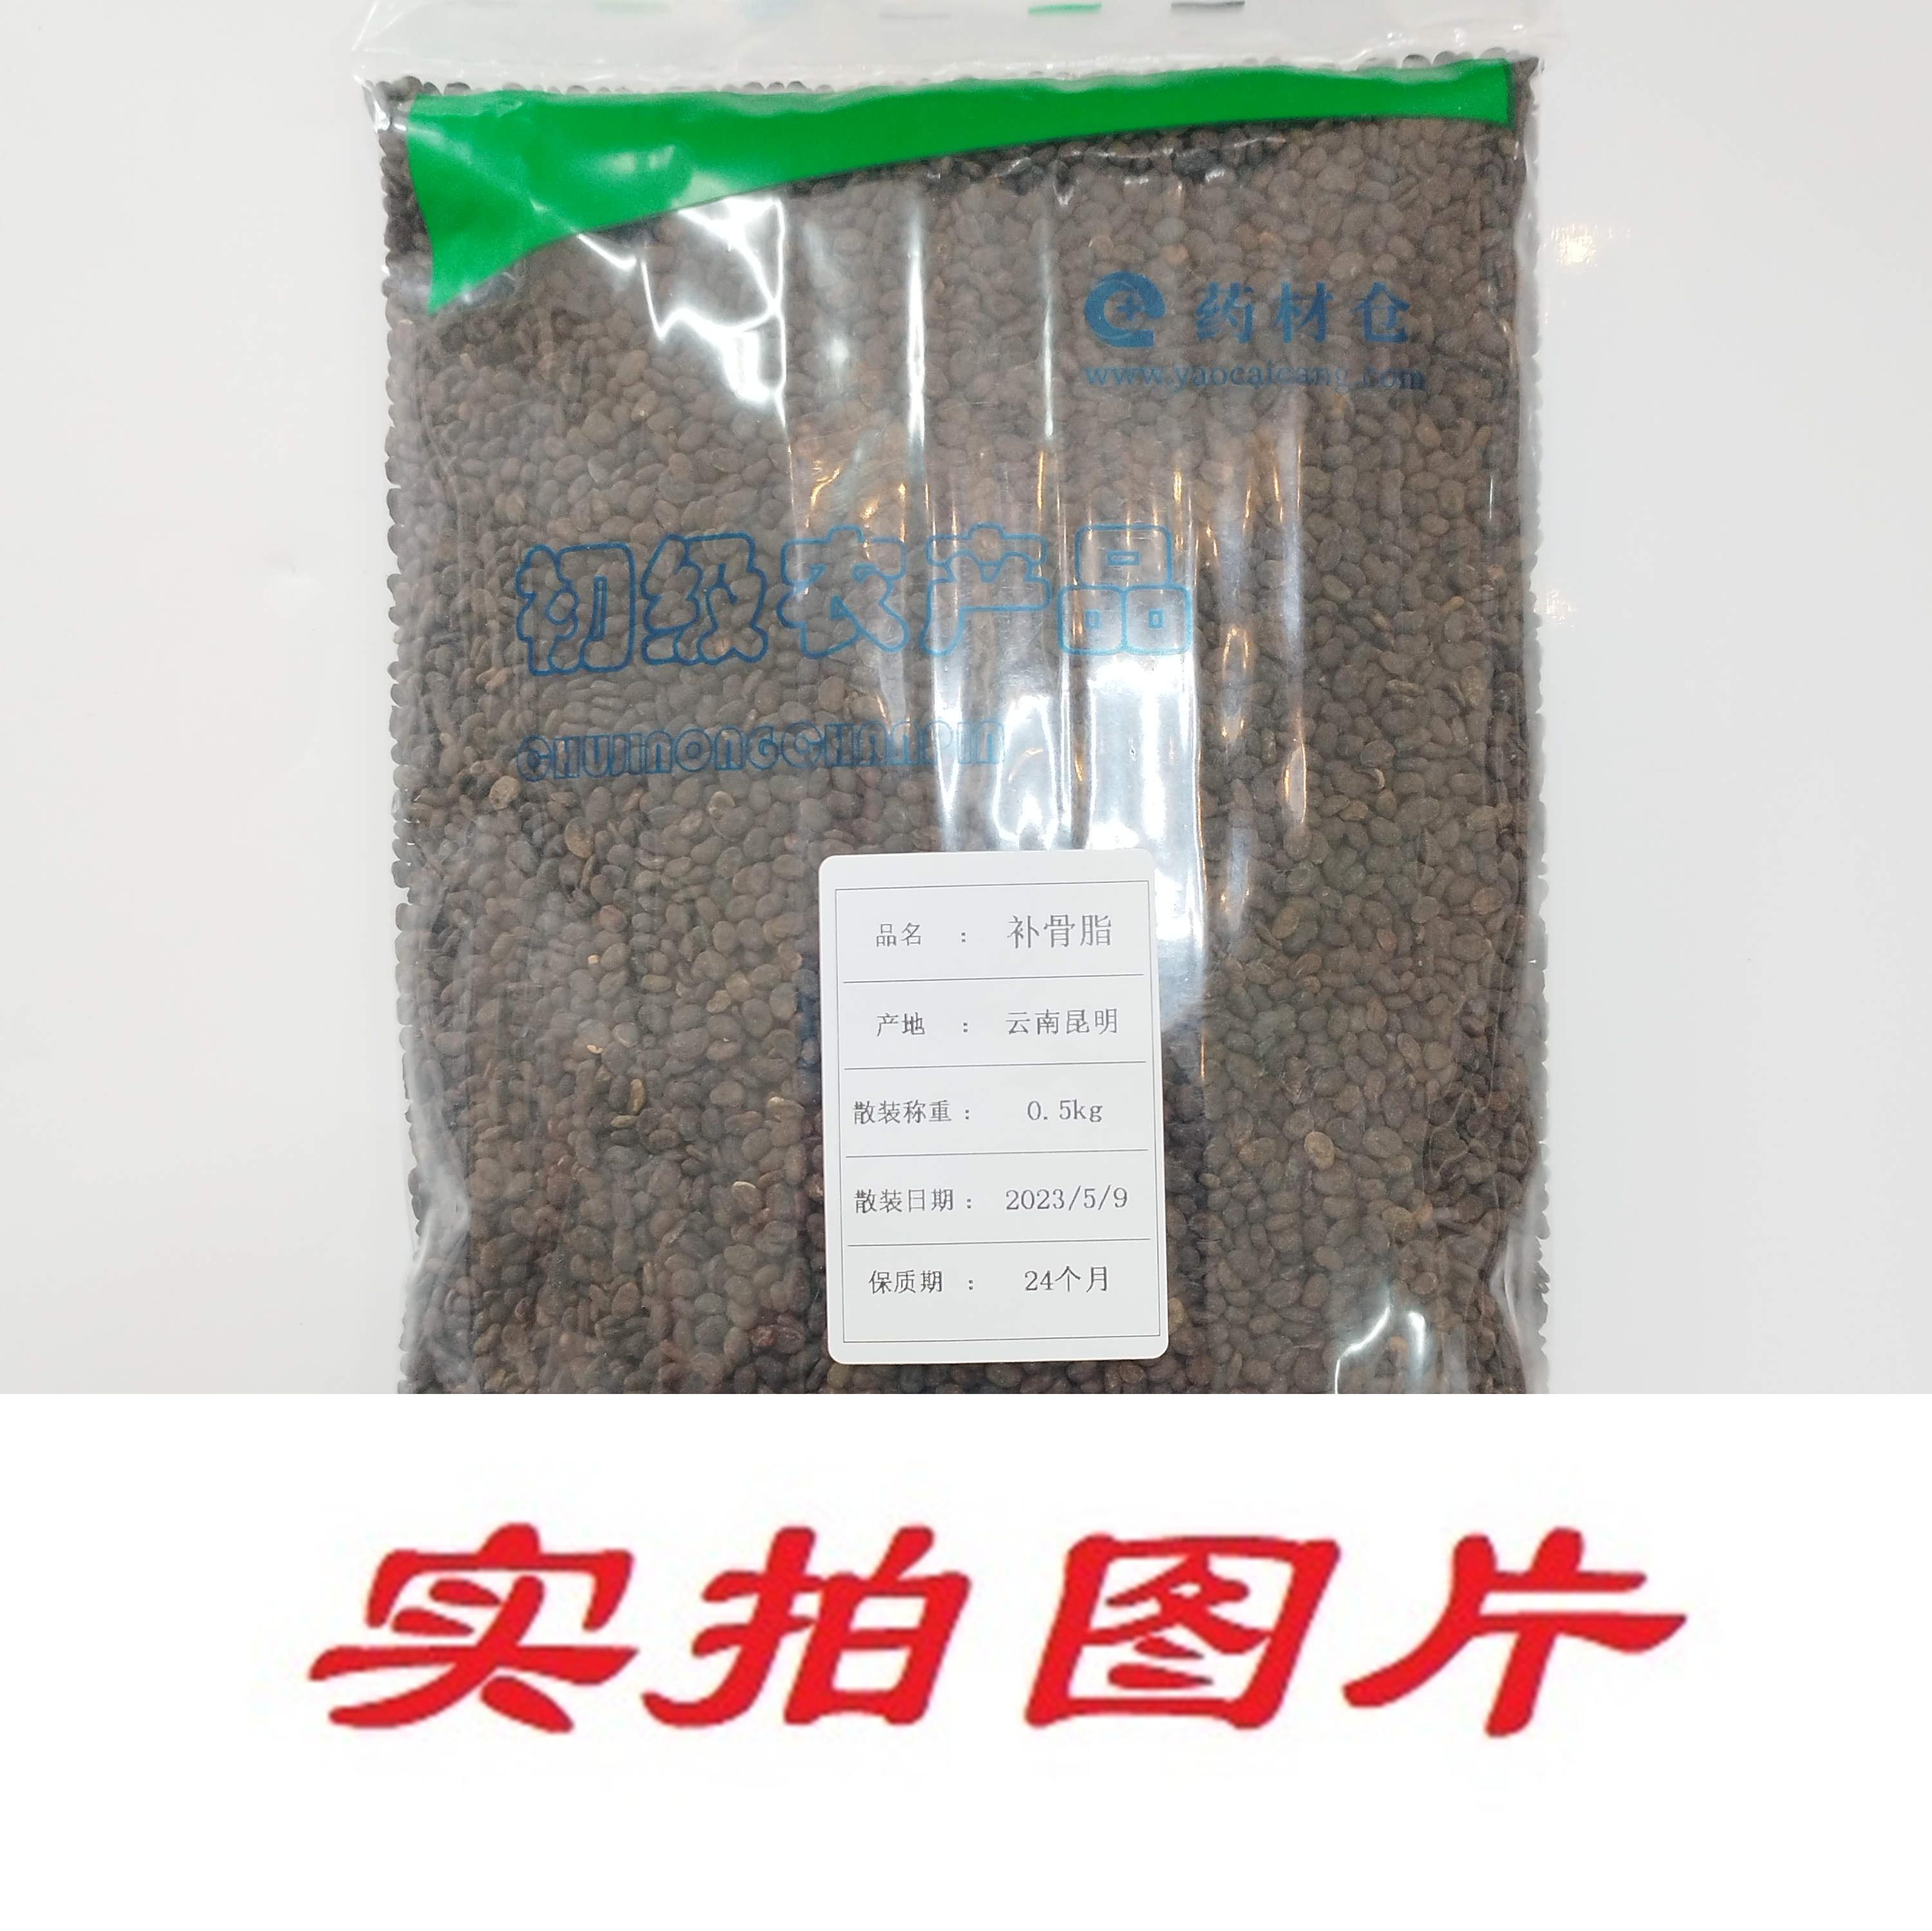 【】补骨脂0.5kg-农副产品